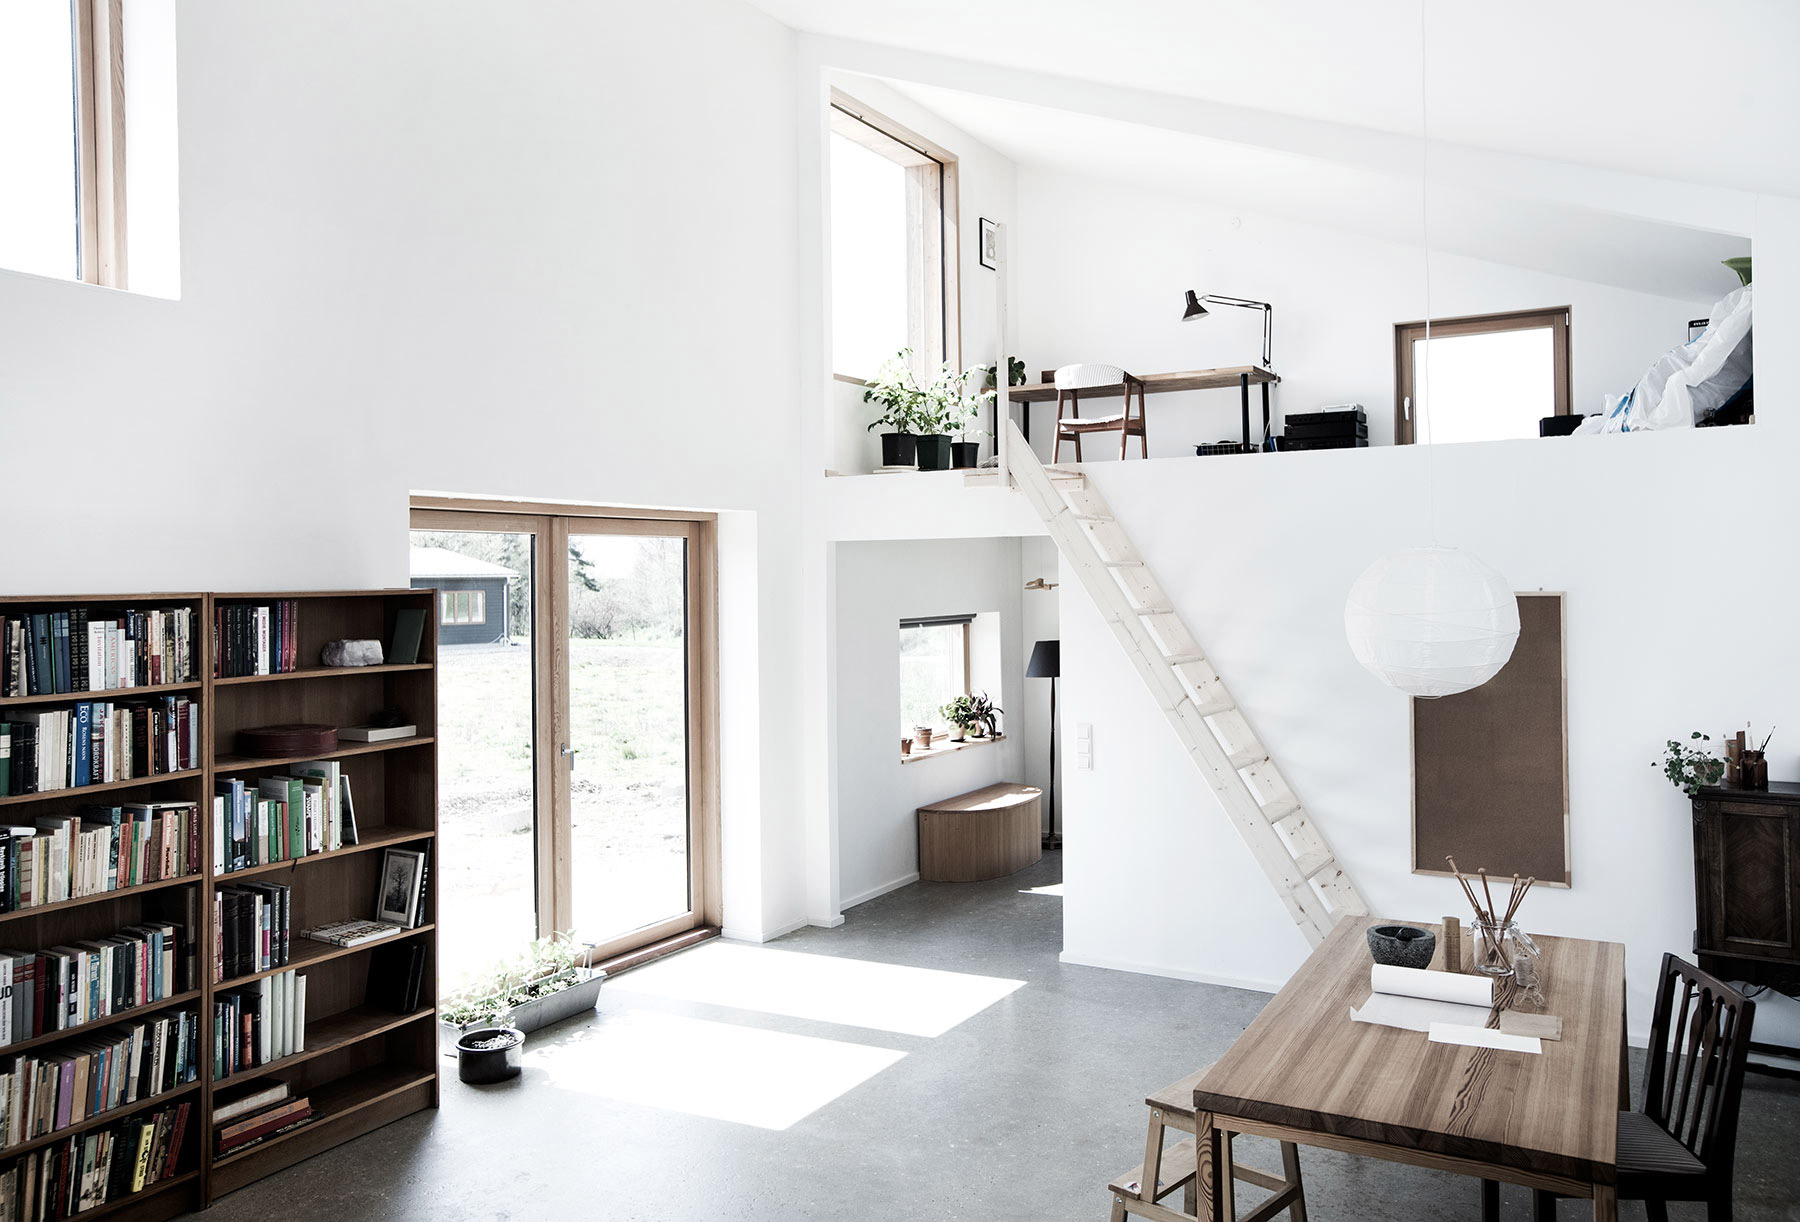 Sigurd Larsen Design Architecture Affordable Sustainablility  Eco House  byggeri Copenhagen wood 5.5